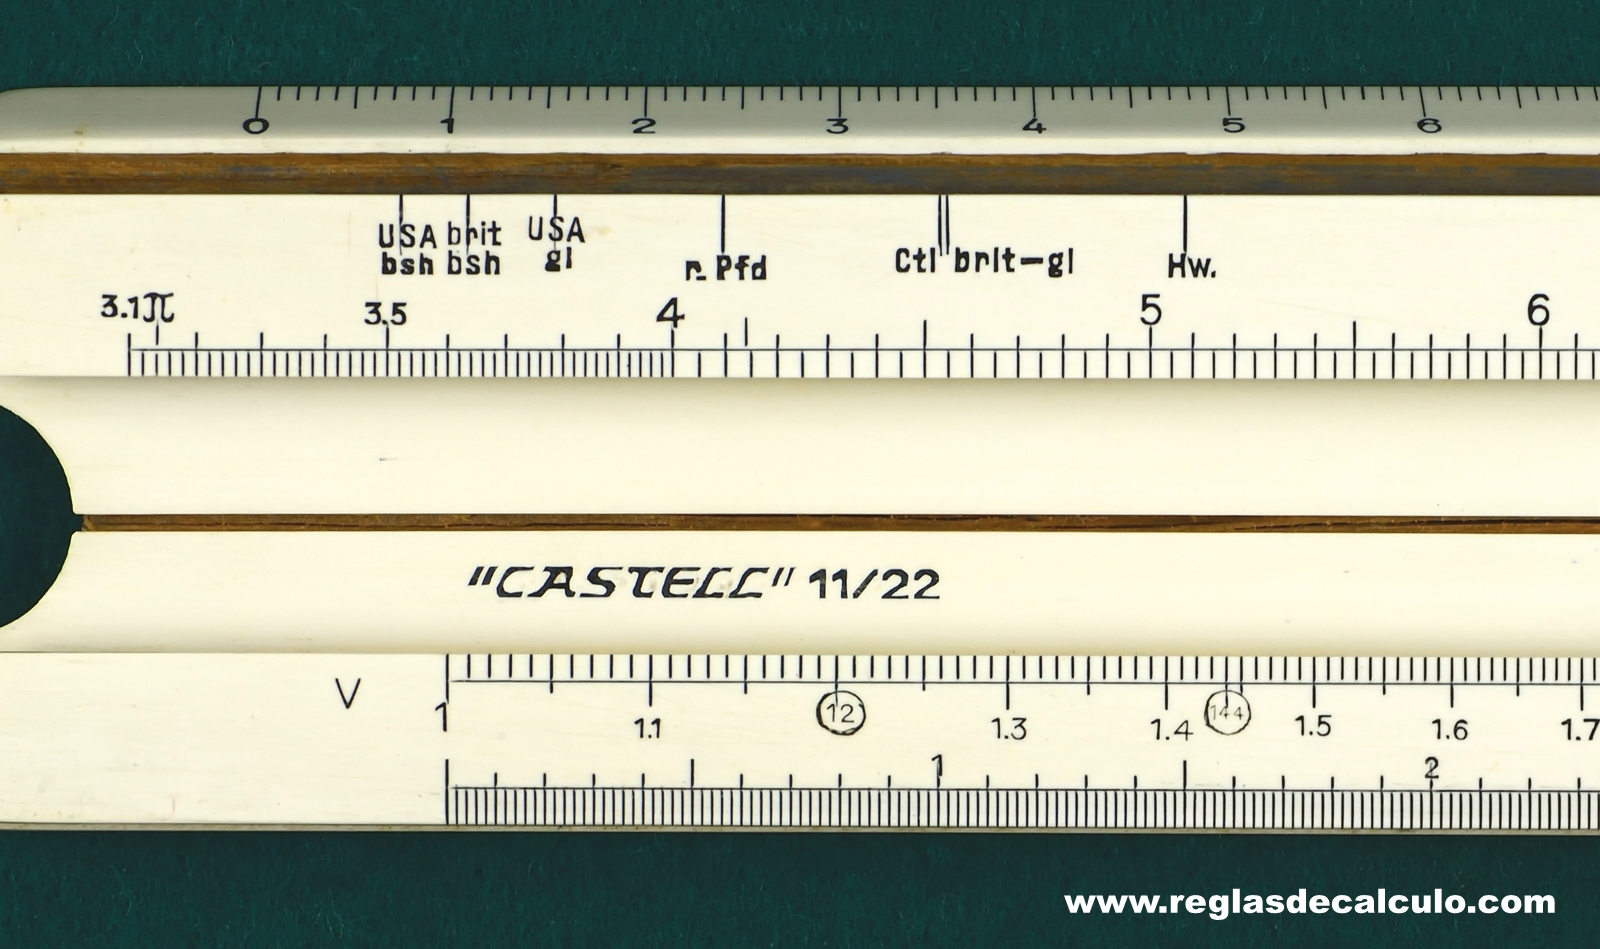 Faber Castell 11/22 Regla de Calculo Slide Rule